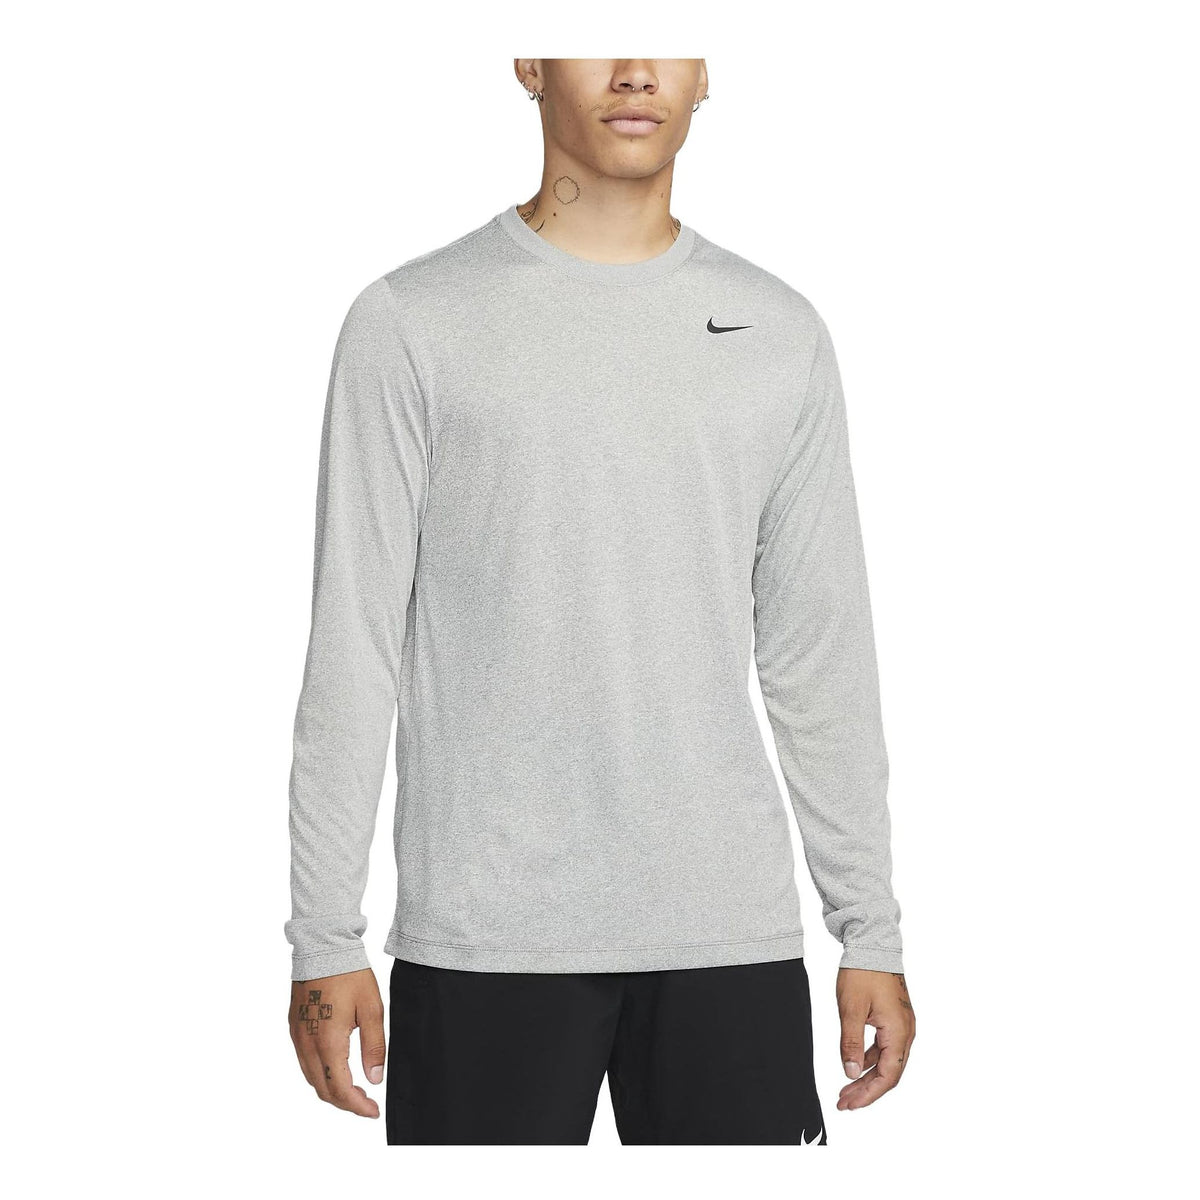 Nike Dri-FIT Legend Long-Sleeve Fitness Top 'Grey' DX0993-063-KICKS CREW